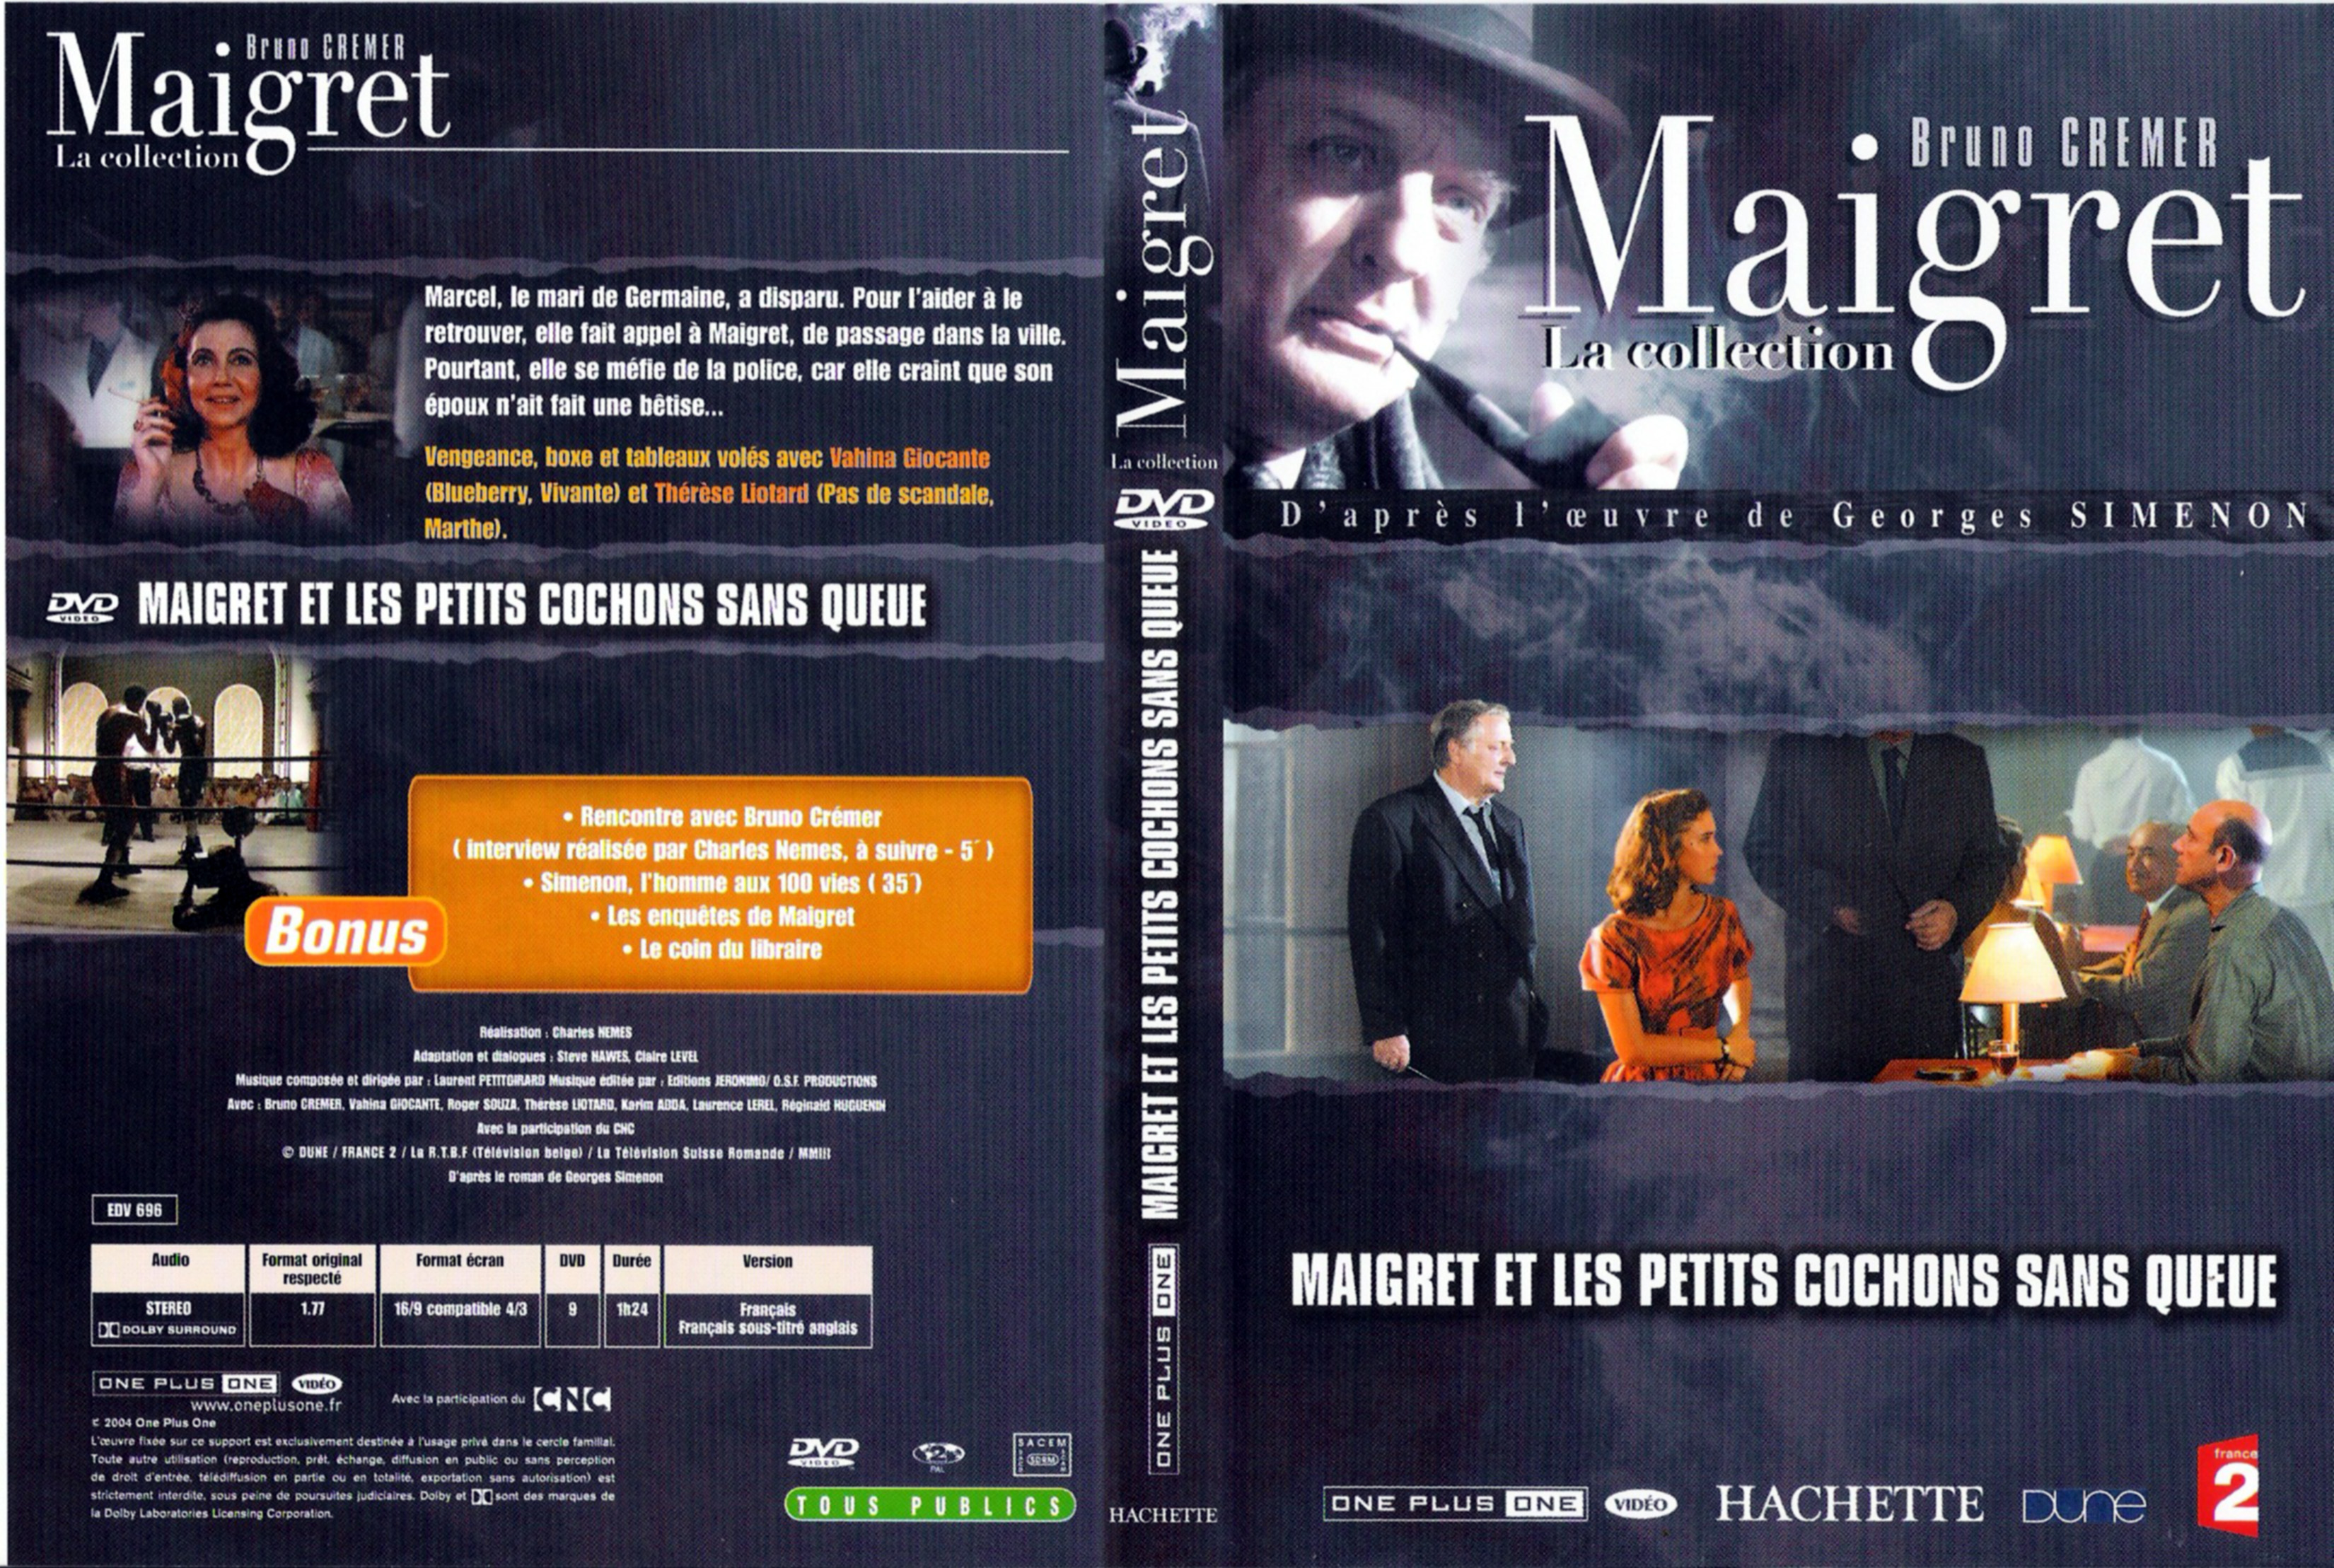 Jaquette DVD Maigret et les petits cochons sans queue (Bruno Cremer)